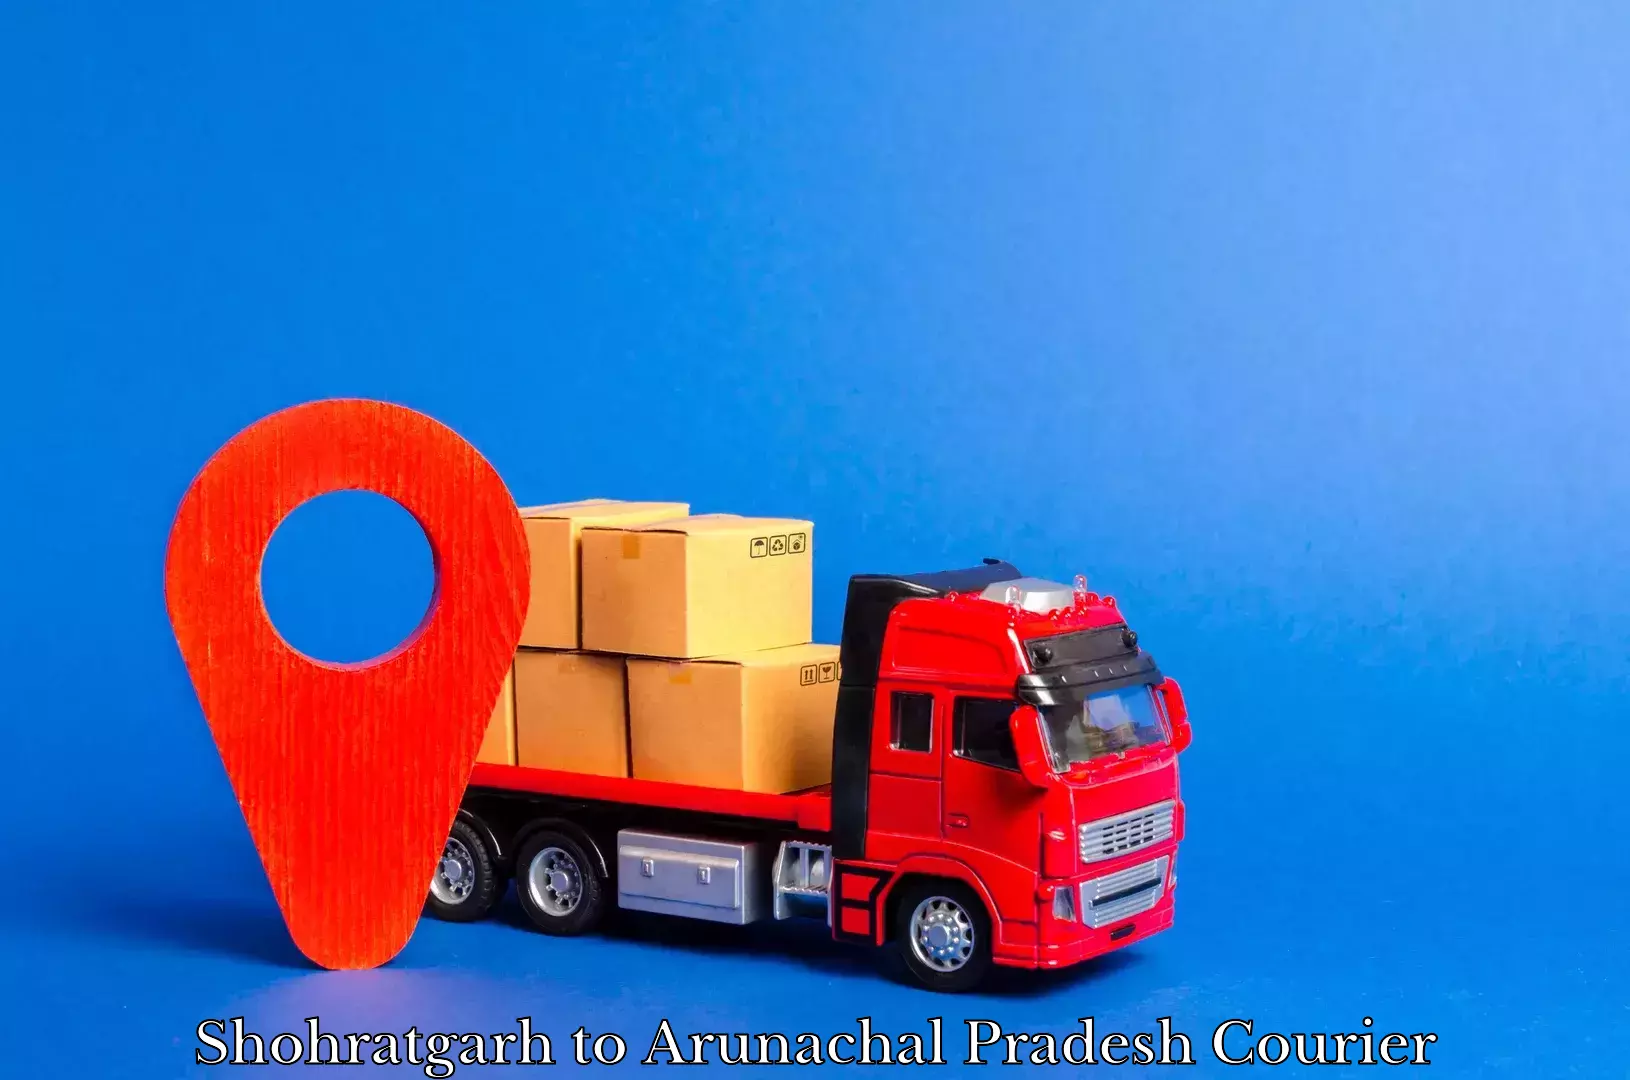 Wholesale parcel delivery Shohratgarh to Arunachal Pradesh